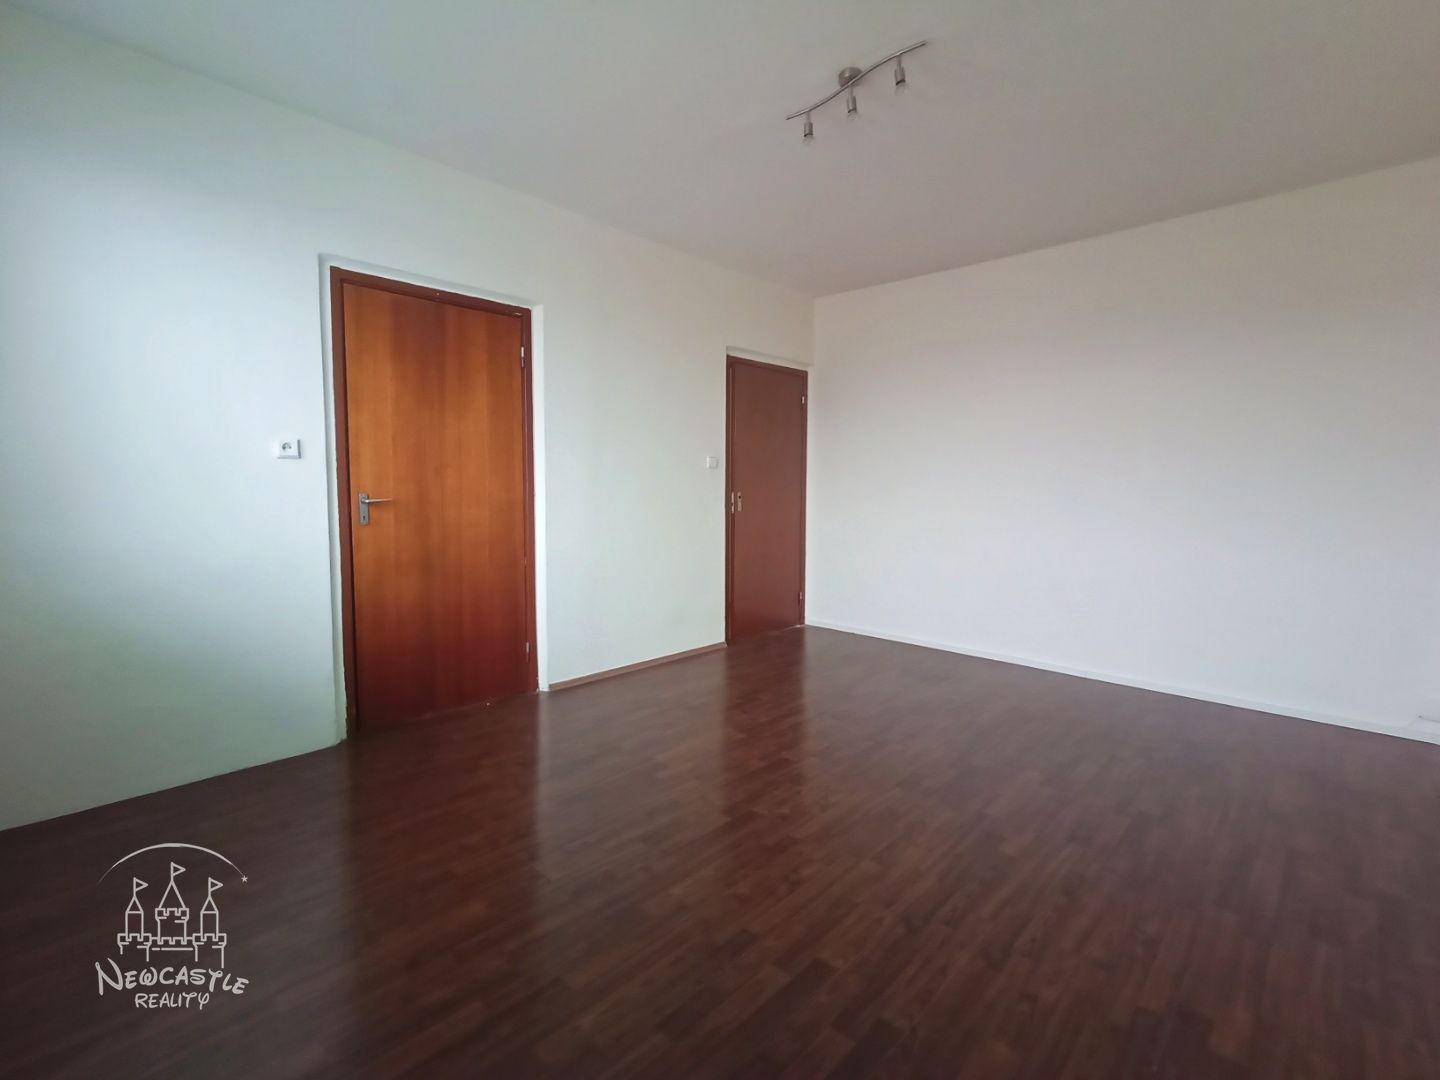 NEWCASTLE⏐NA PREDAJ 2 izbový byt (56m2) v centre Prievidze